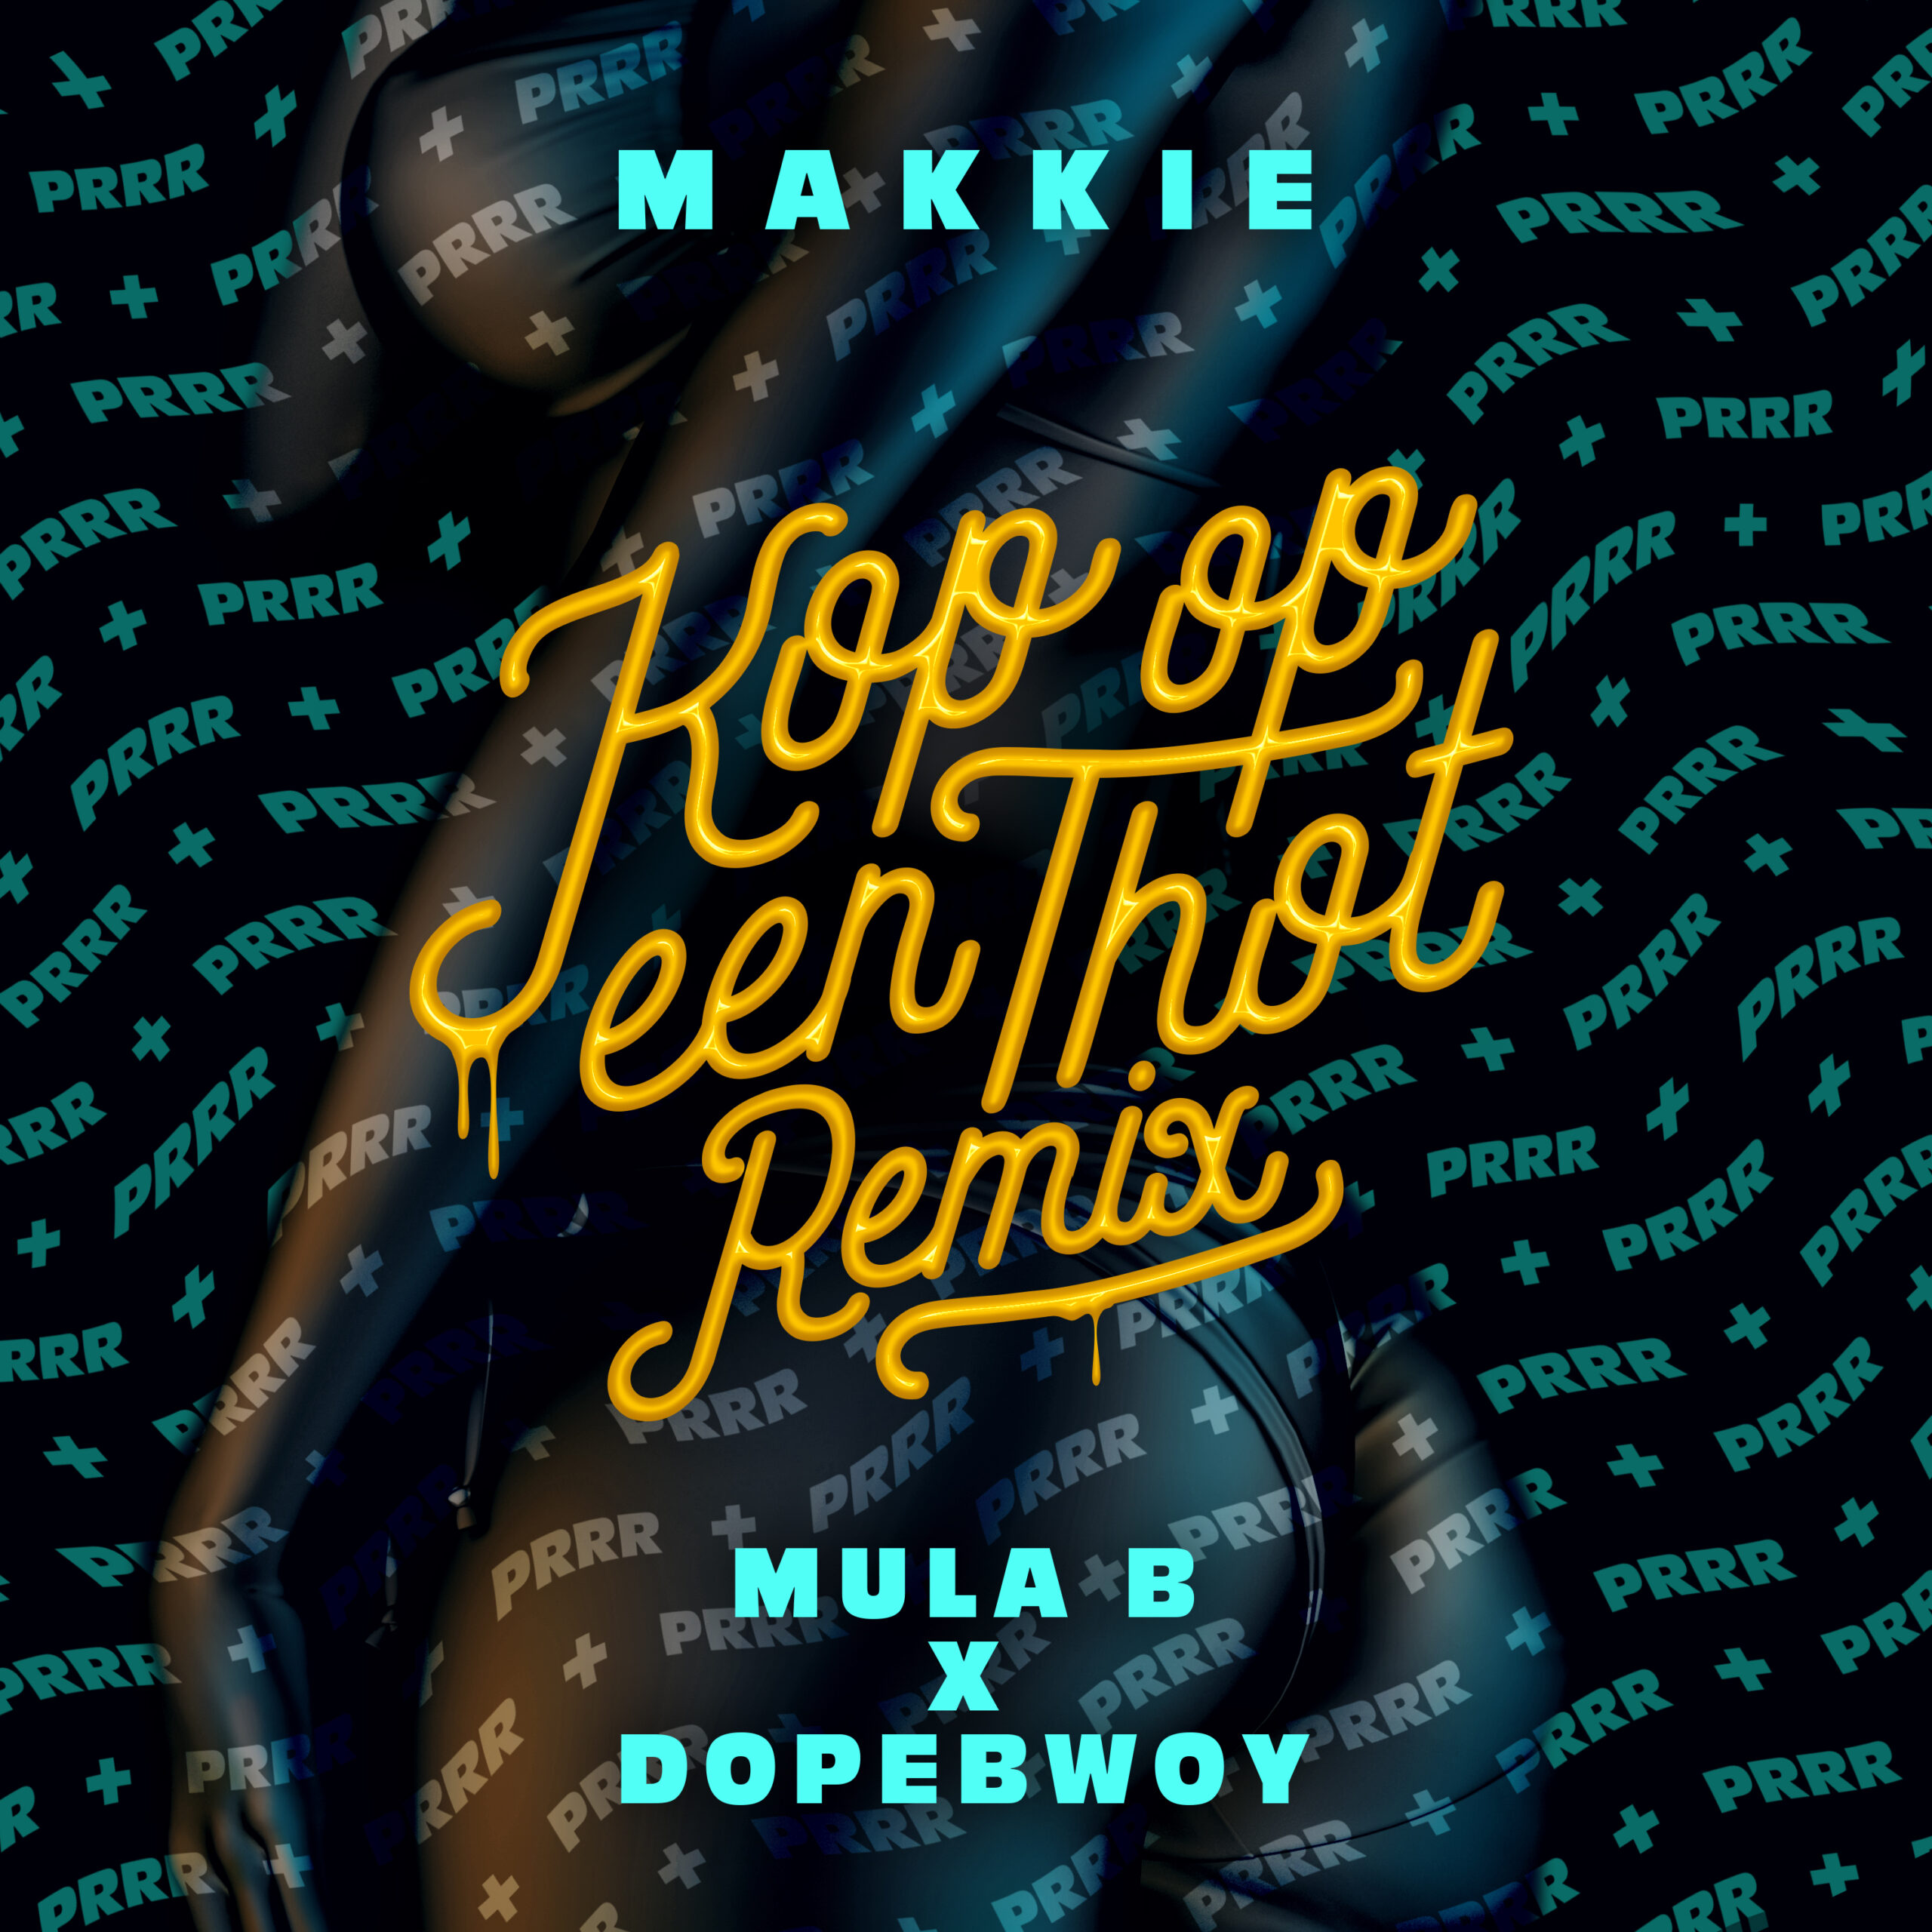 [NU ONLINE]: Makkie x Mula B x Dopebwoy – Kop Op Een Thot (Remix) ft. DRUMMAKID